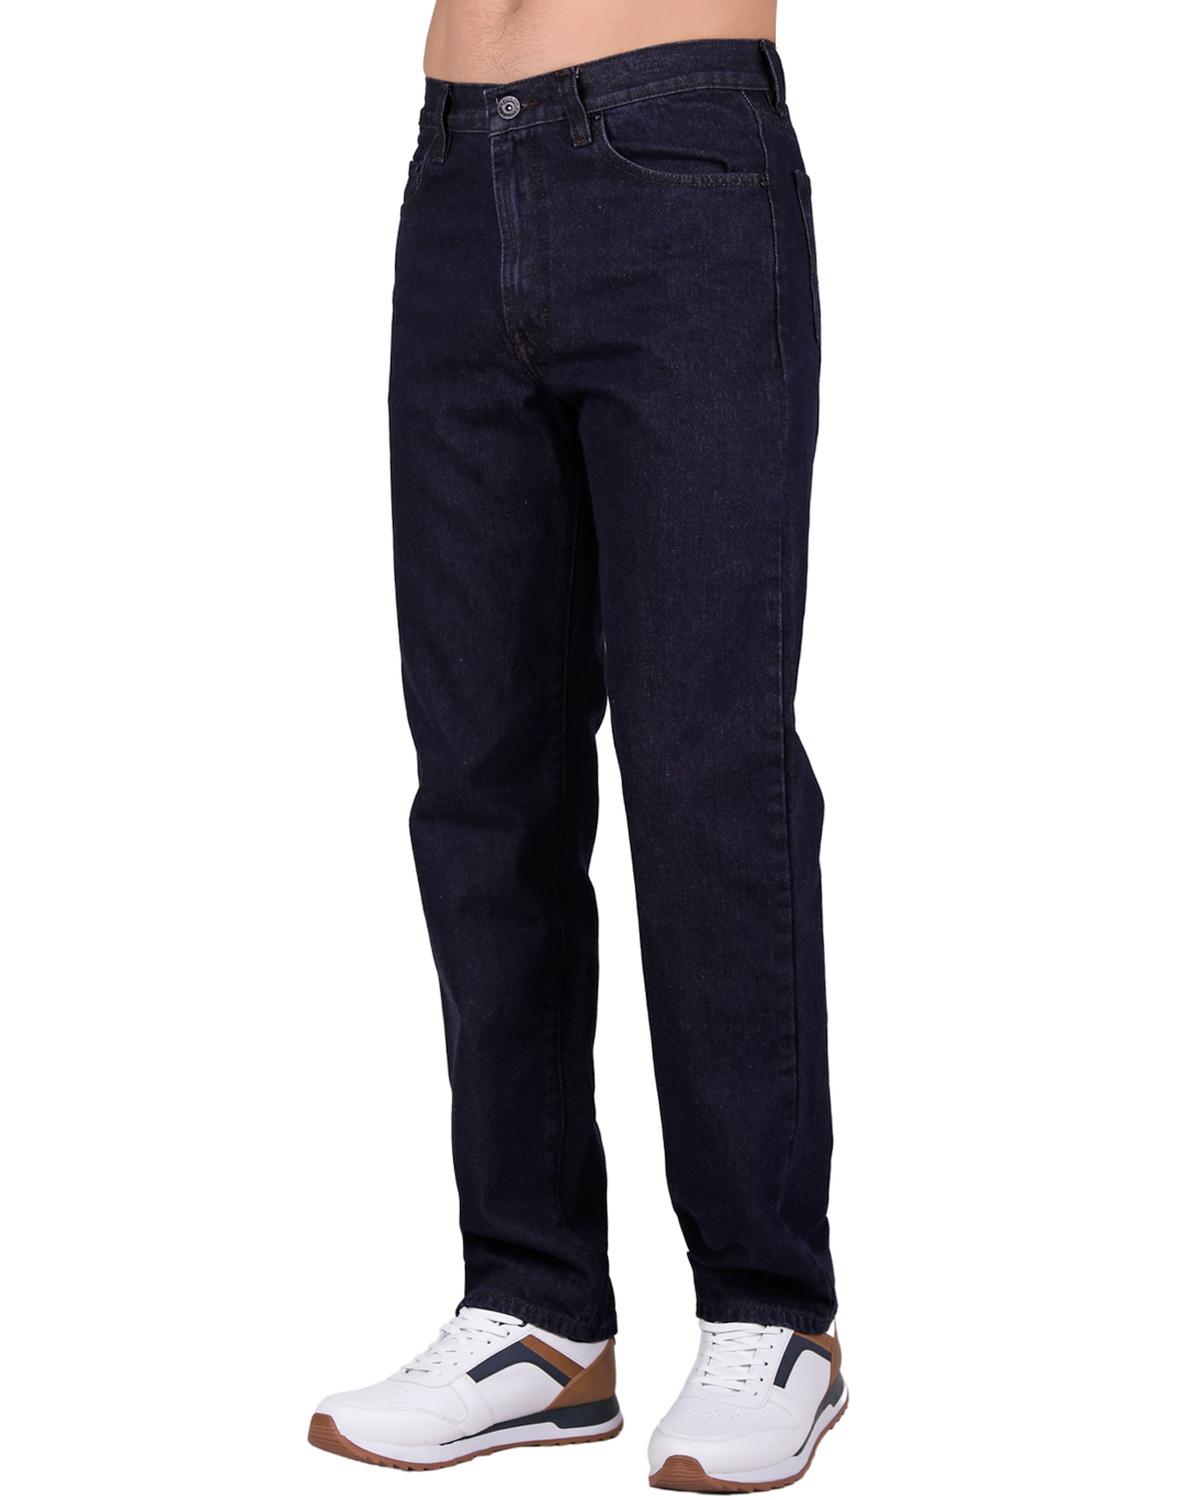 Jeans Básico Hombre Furor 16-Baños 62111391 Mezclilla